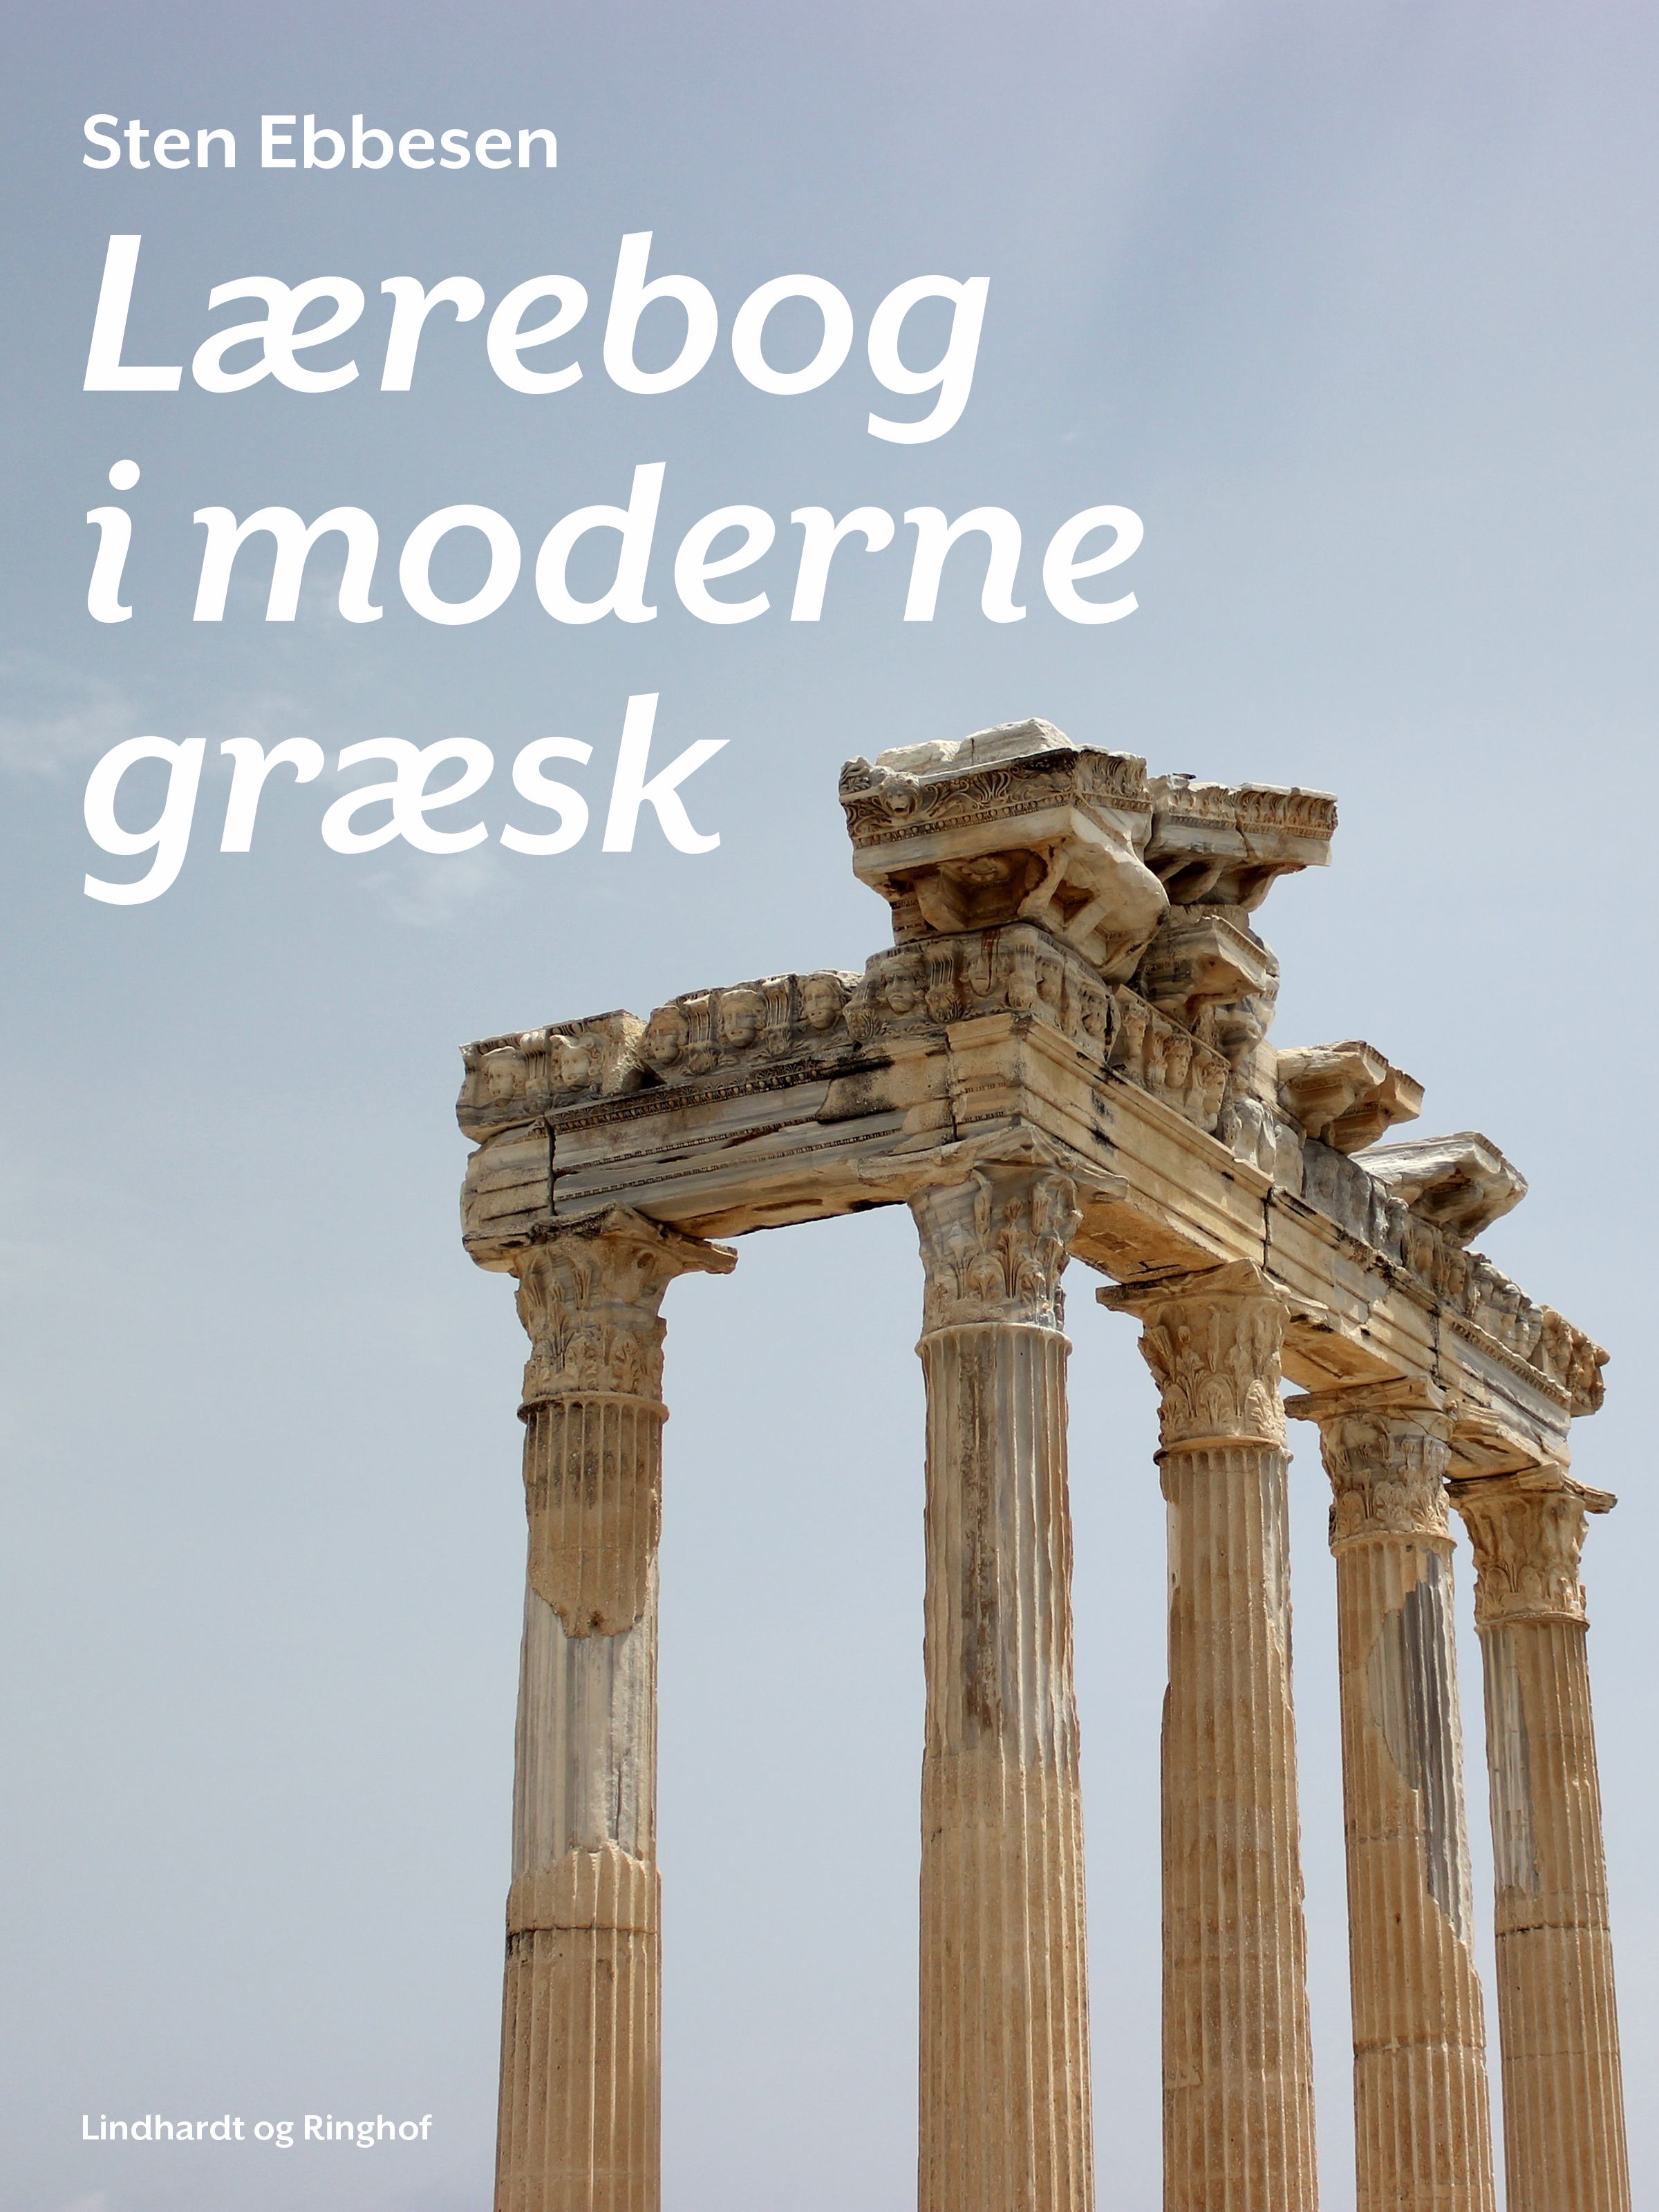 Lærebog i moderne græsk, e-bok av Sten Ebbesen